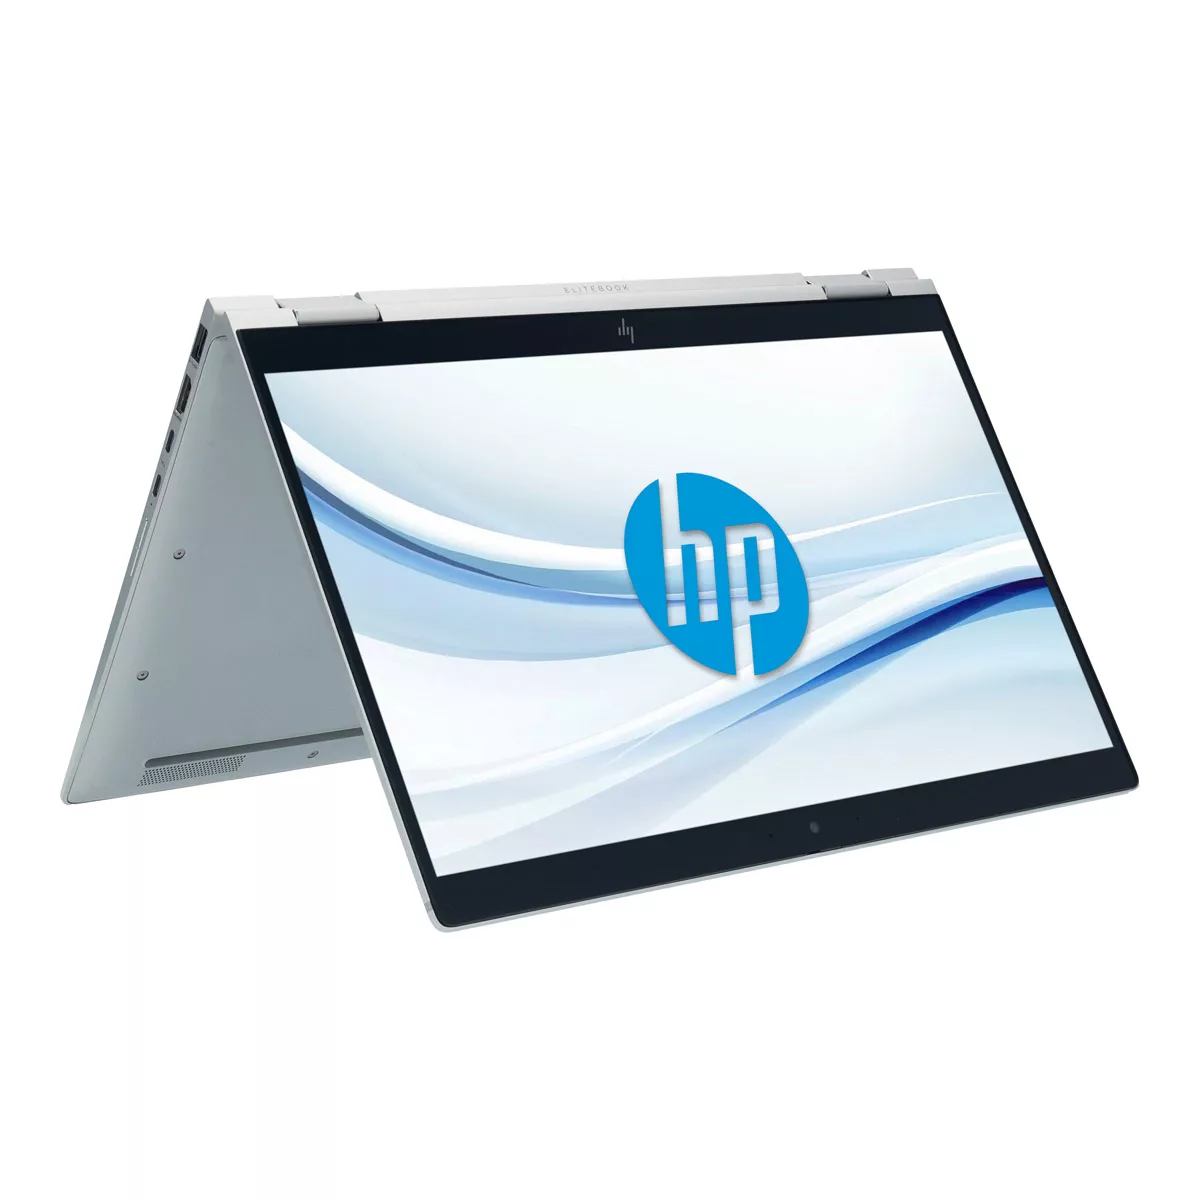 HP EliteBook x360 1040 G6 Core i5 8365U 16 GB 500 GB M.2 nVME SSD Touch Webcam A+